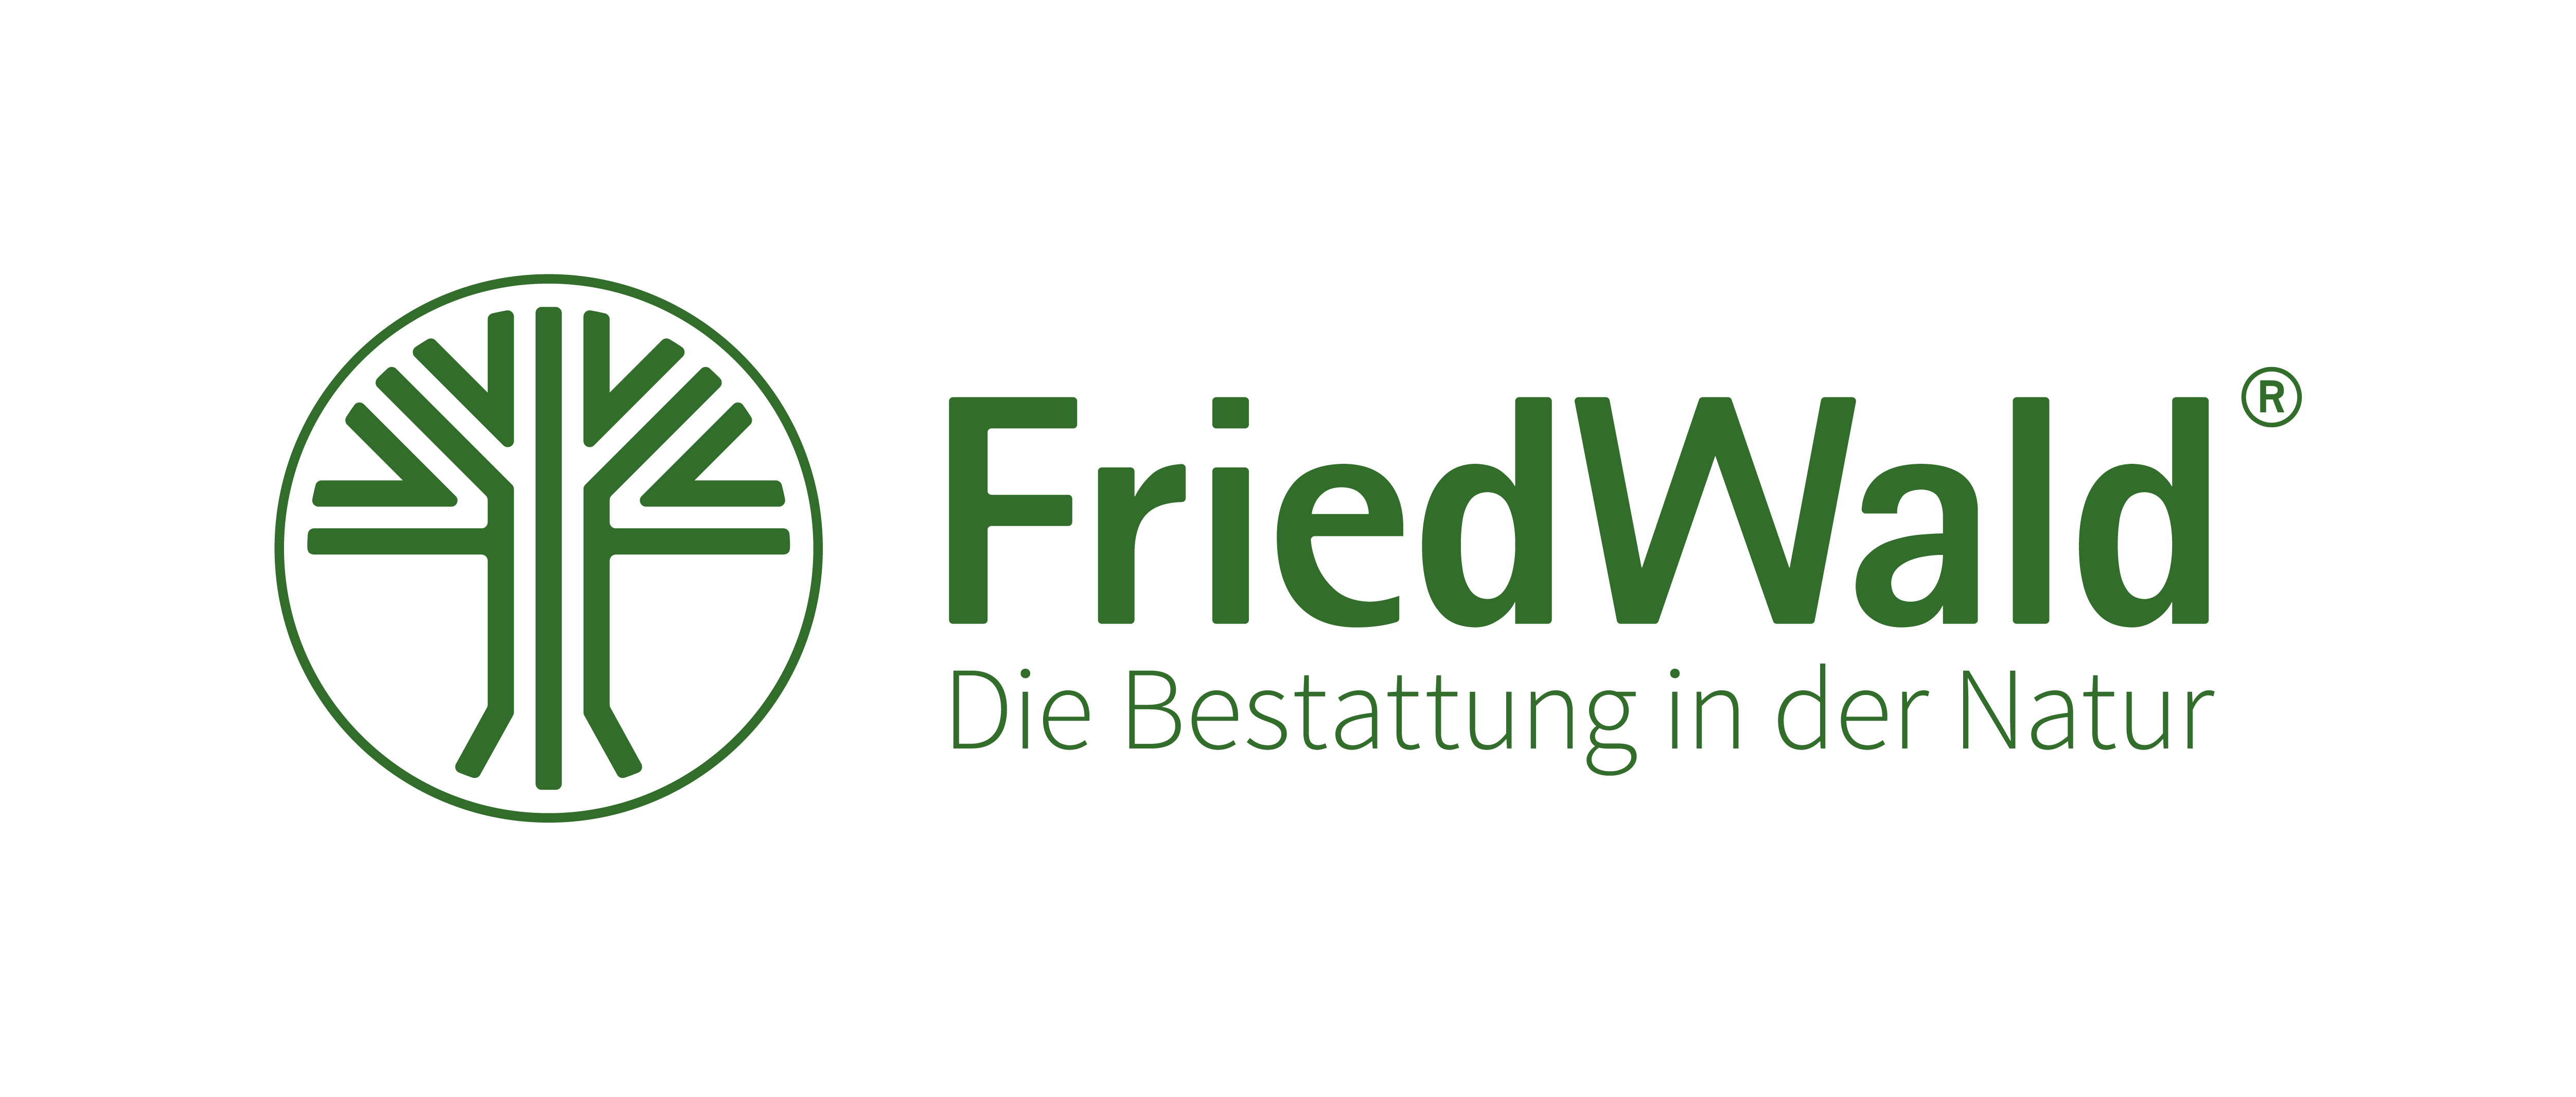 Logo FriedWald claim 300dpi rgb